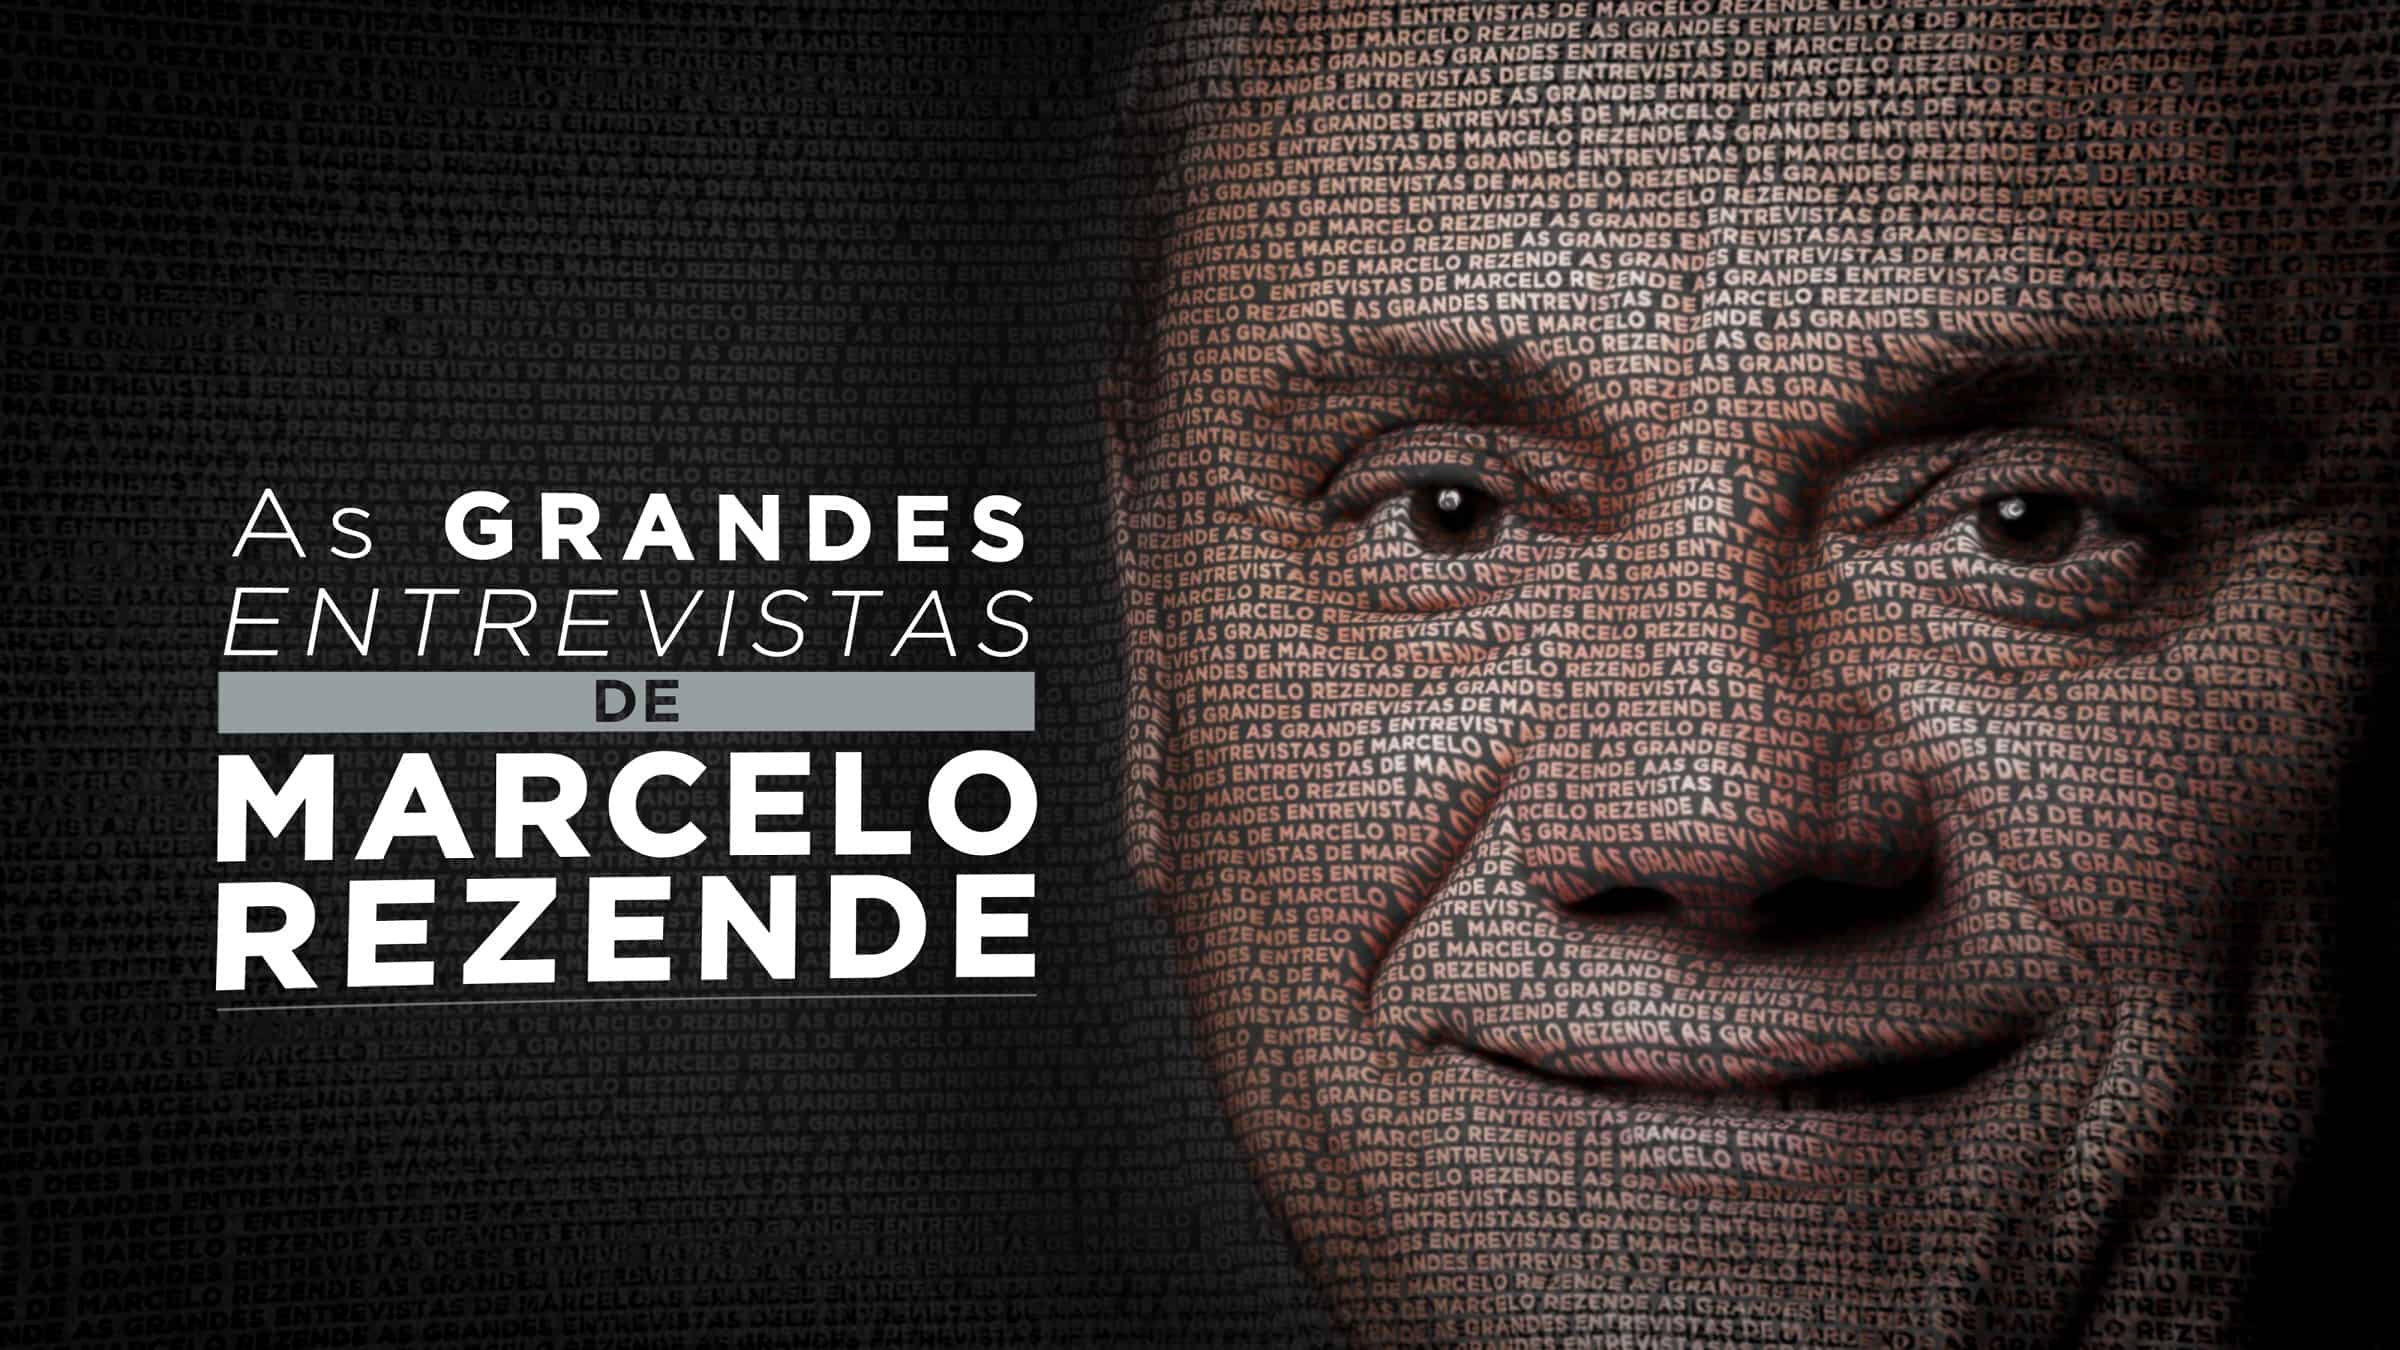 Record celebra aniversário com especial “As Grandes Entrevistas de Marcelo Rezende”